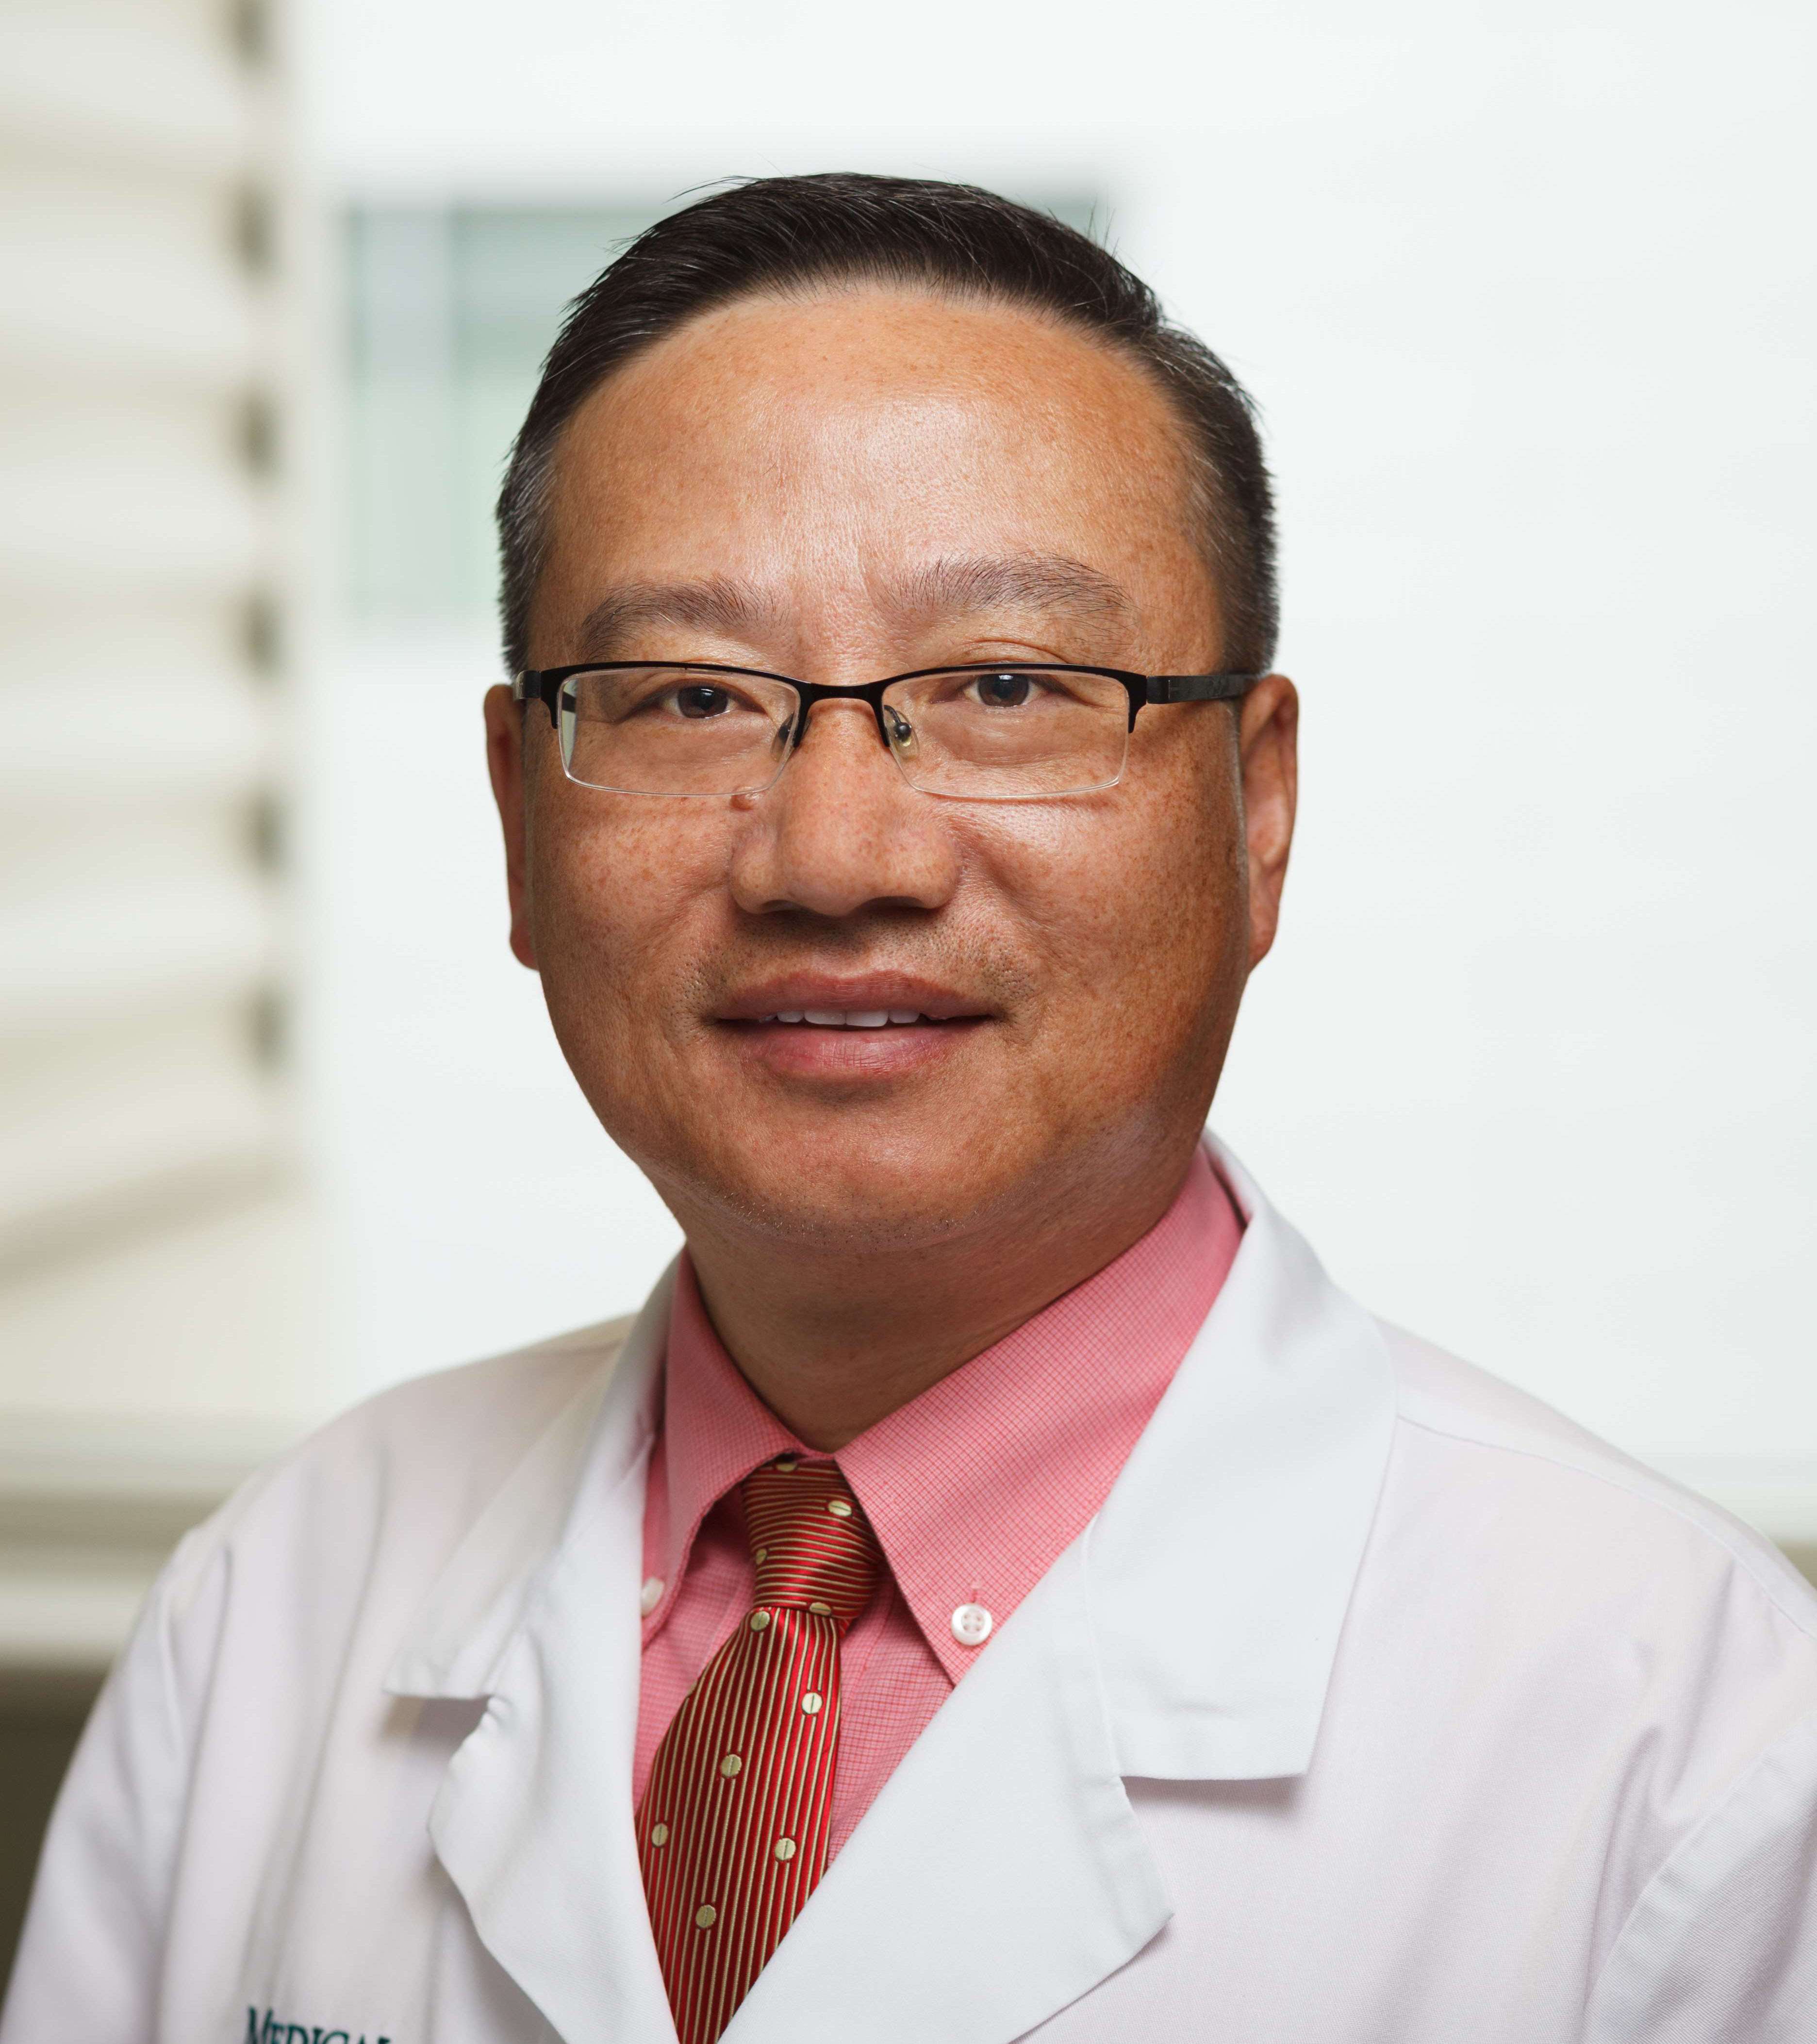 X. Allen Li, PhD, DABMP, FAAPM